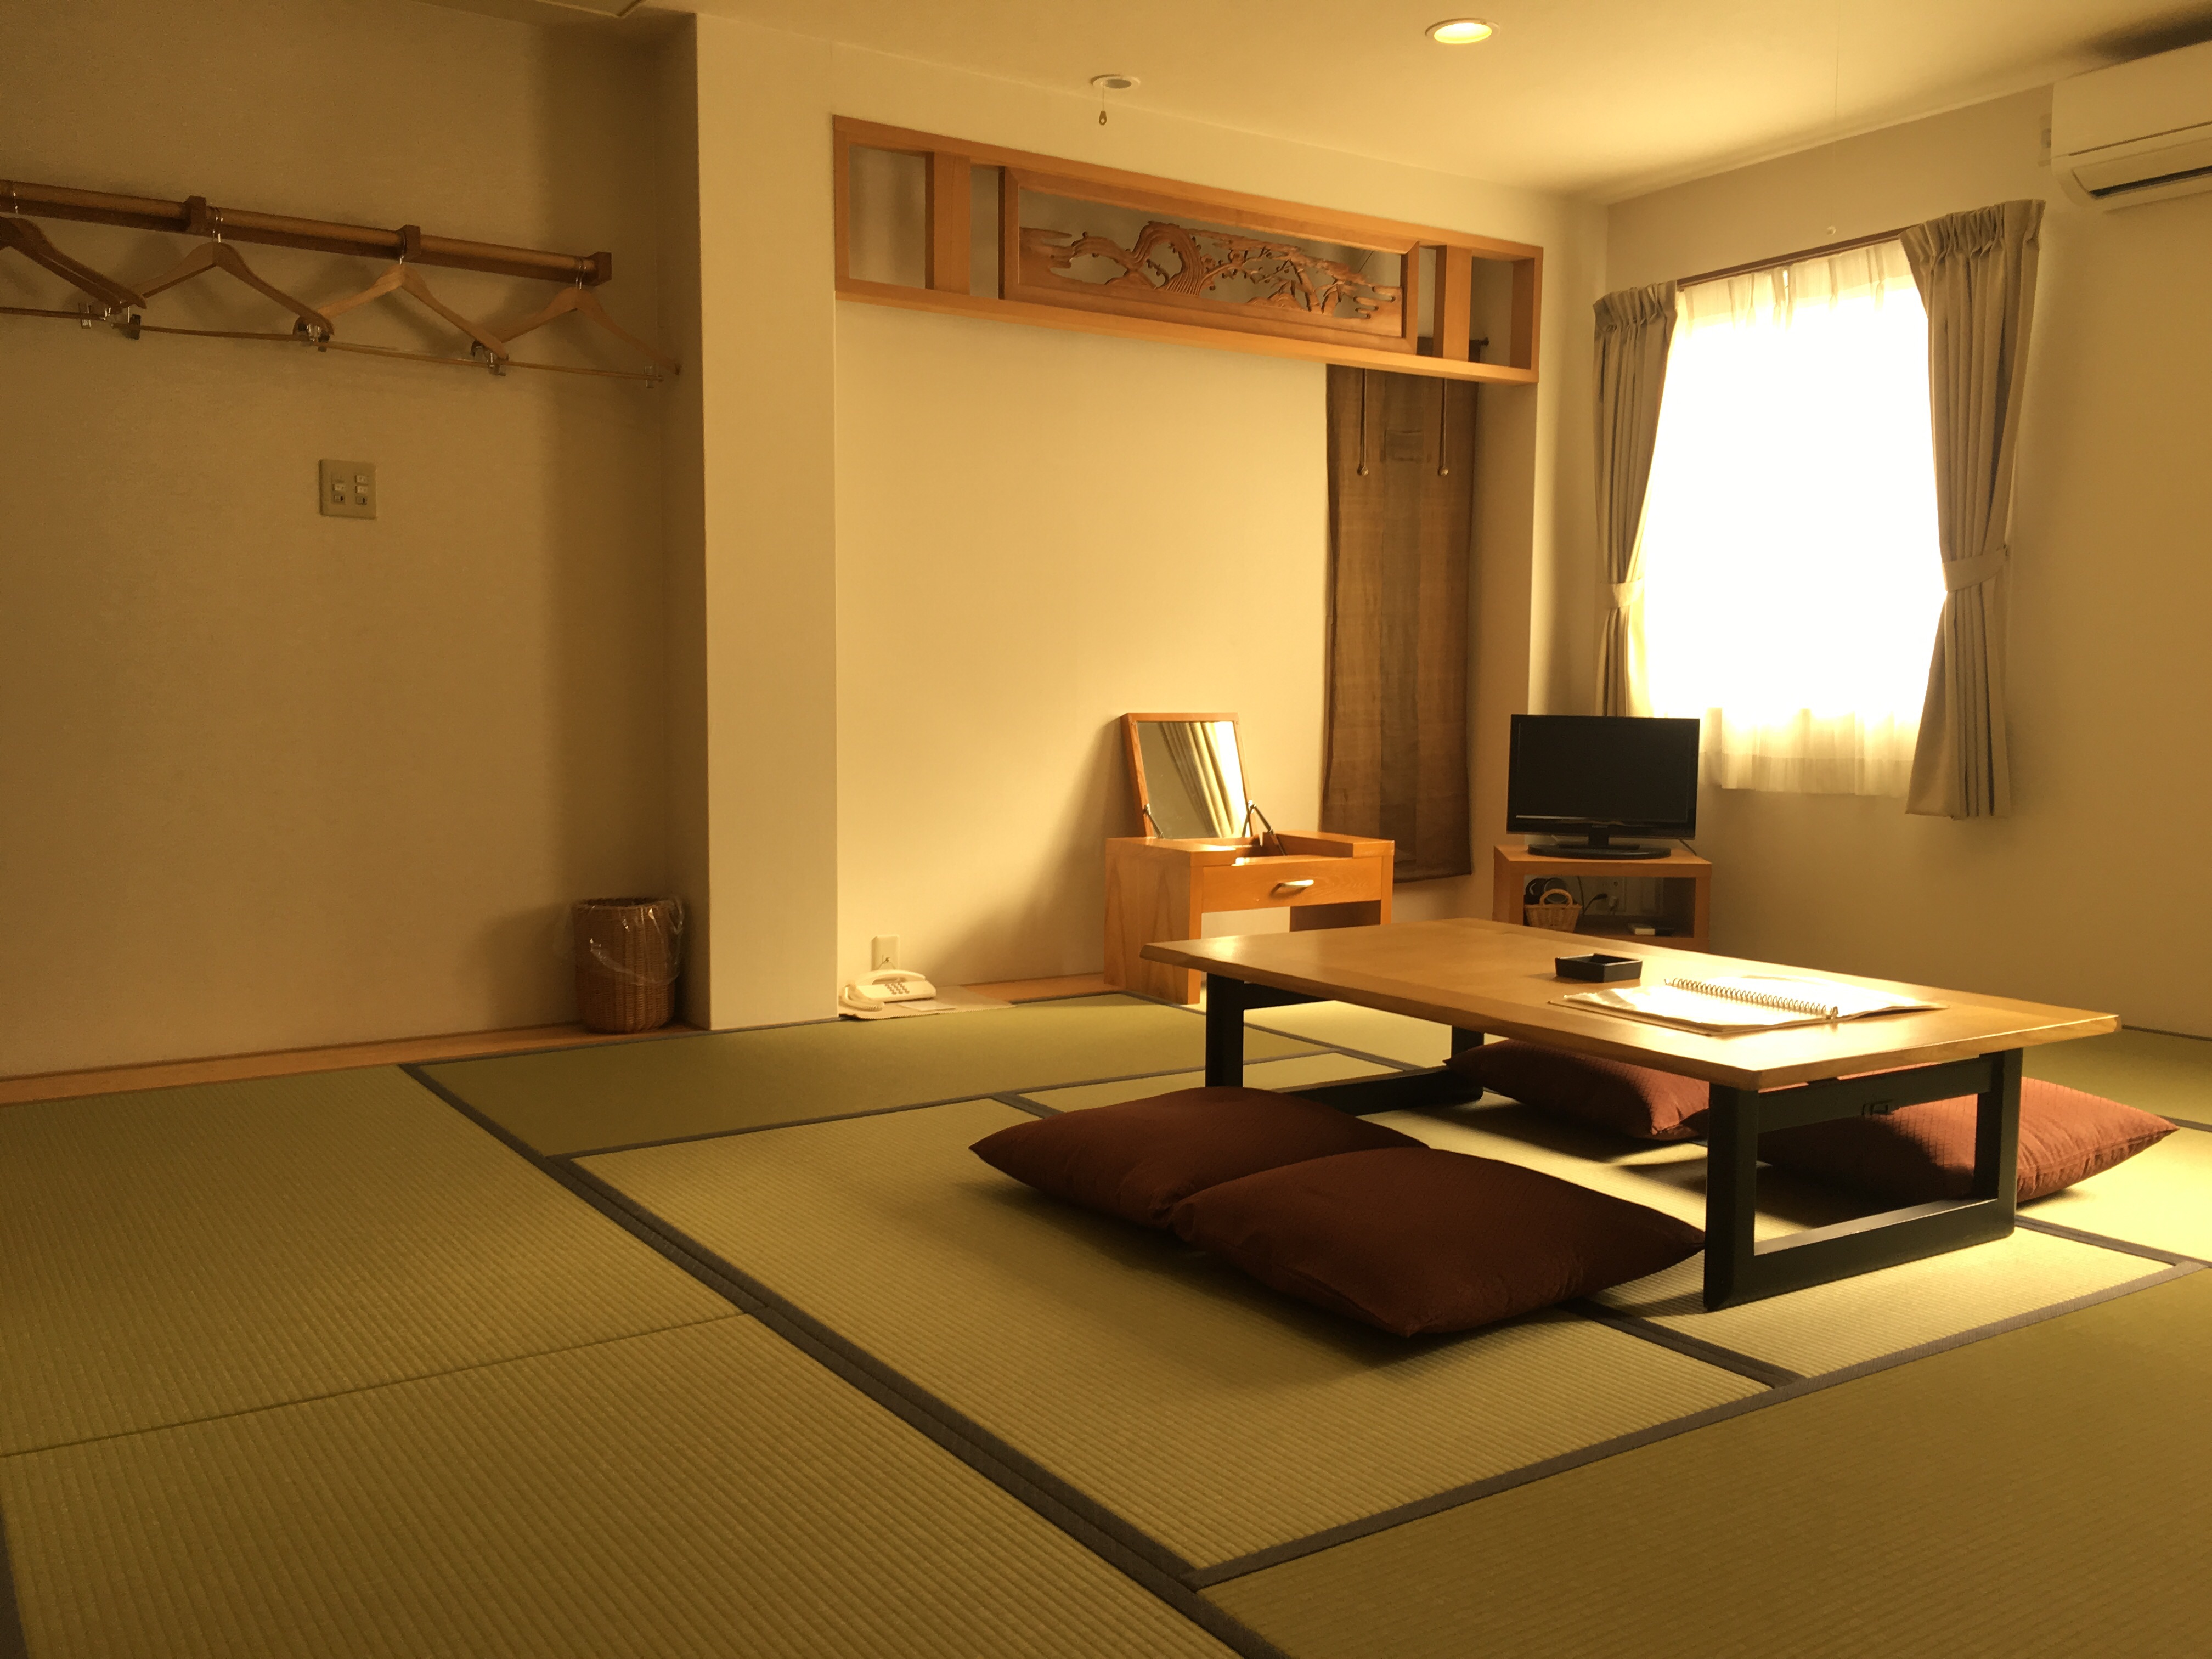 和室 / Washitsu / Japanese Room